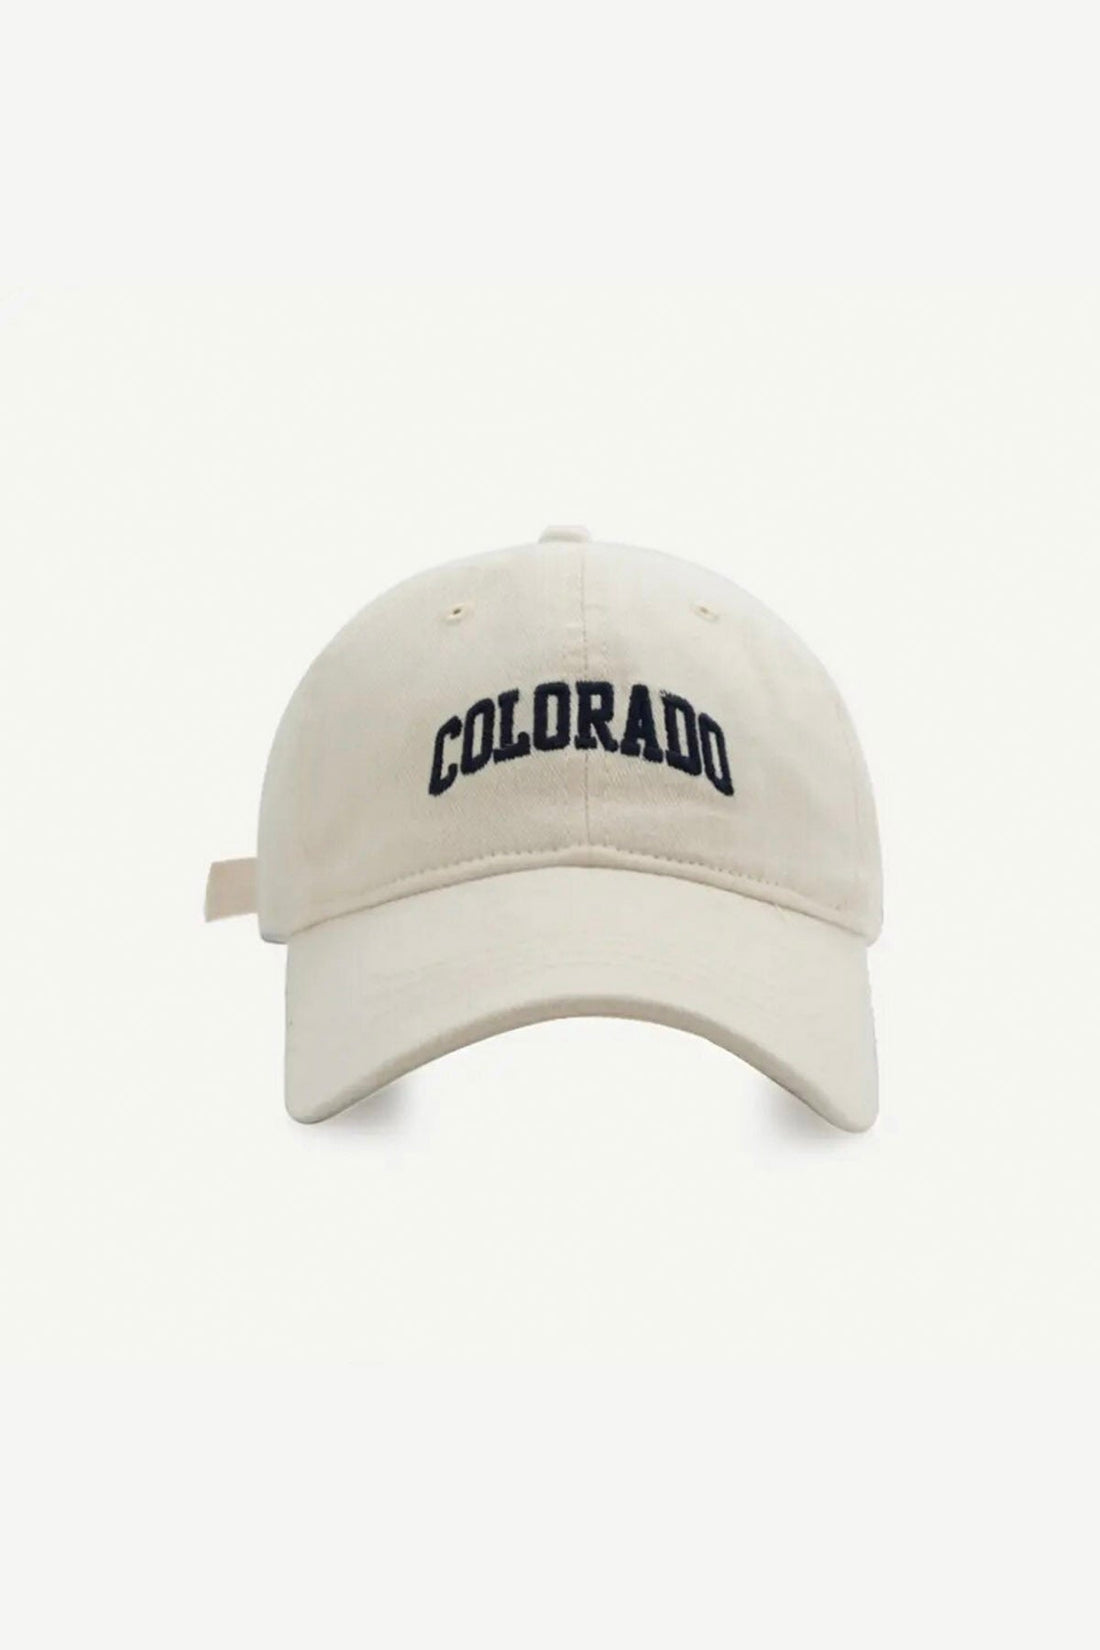 Colorado Cap in Cream | Navy